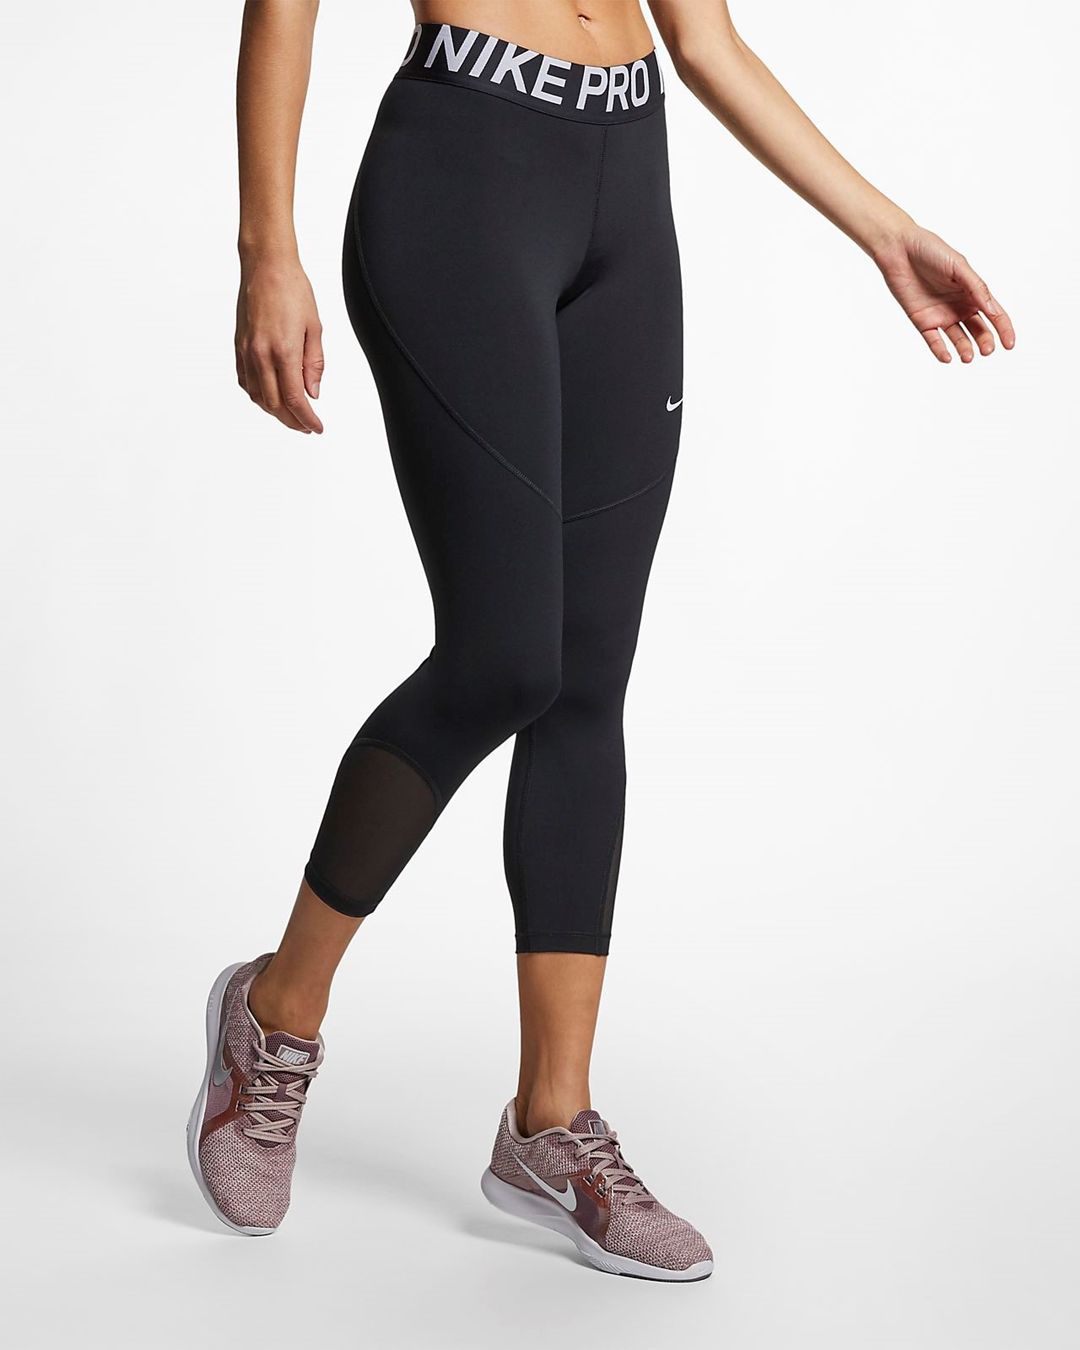 Legging Femme Nike Pro Noir